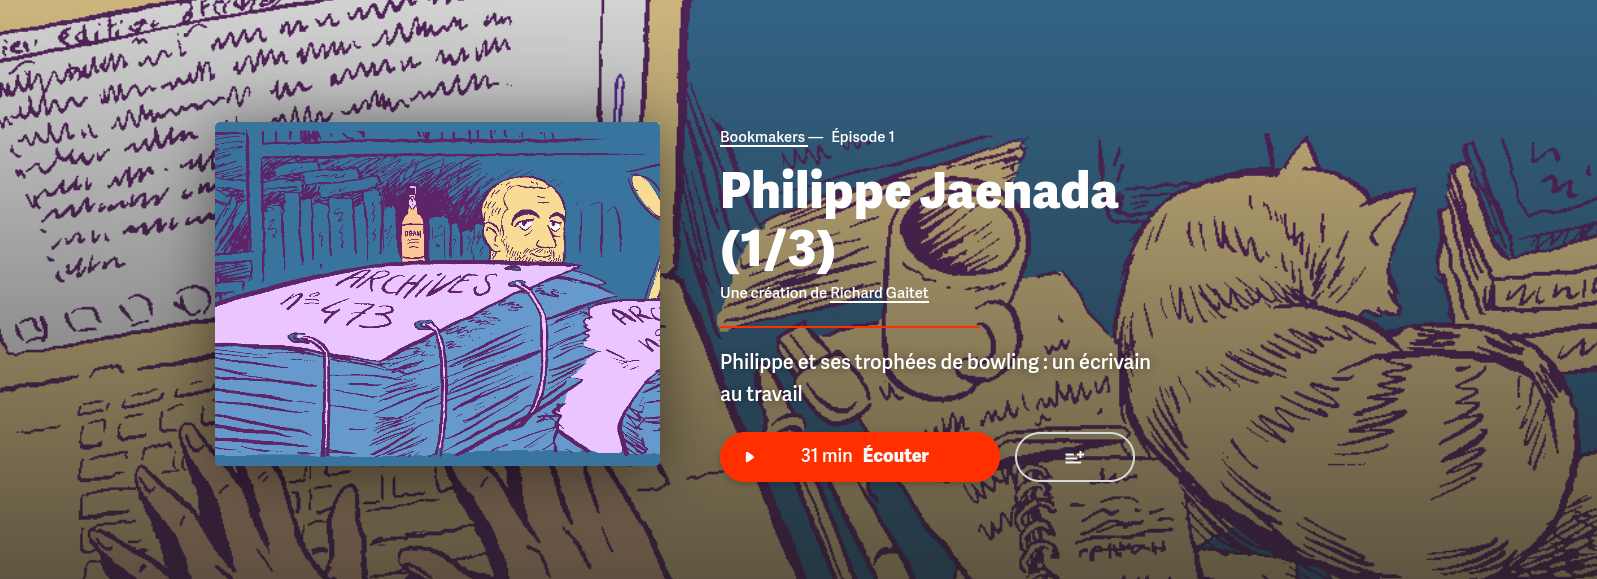 Capture d'écran de la page web du podcast Bookmarkers - épisode 1/3 Philippe Jaenada